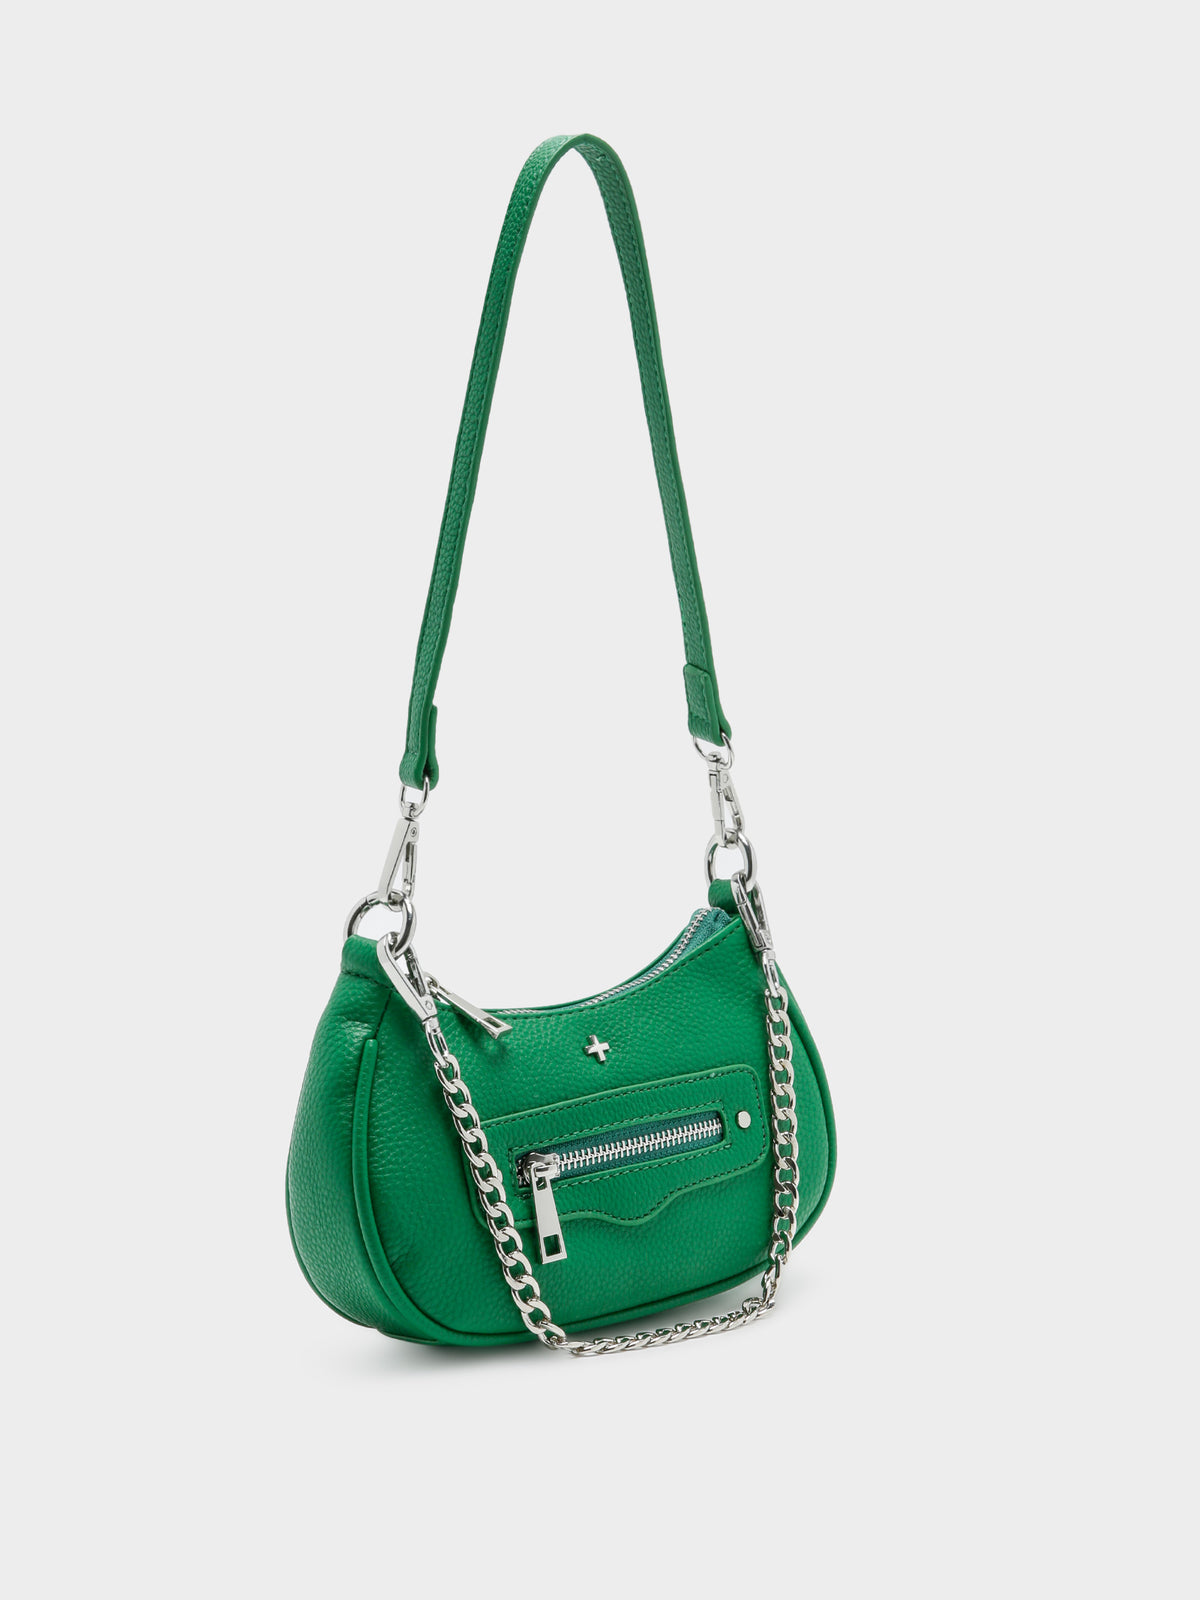 Novo Bag in Green Pebble